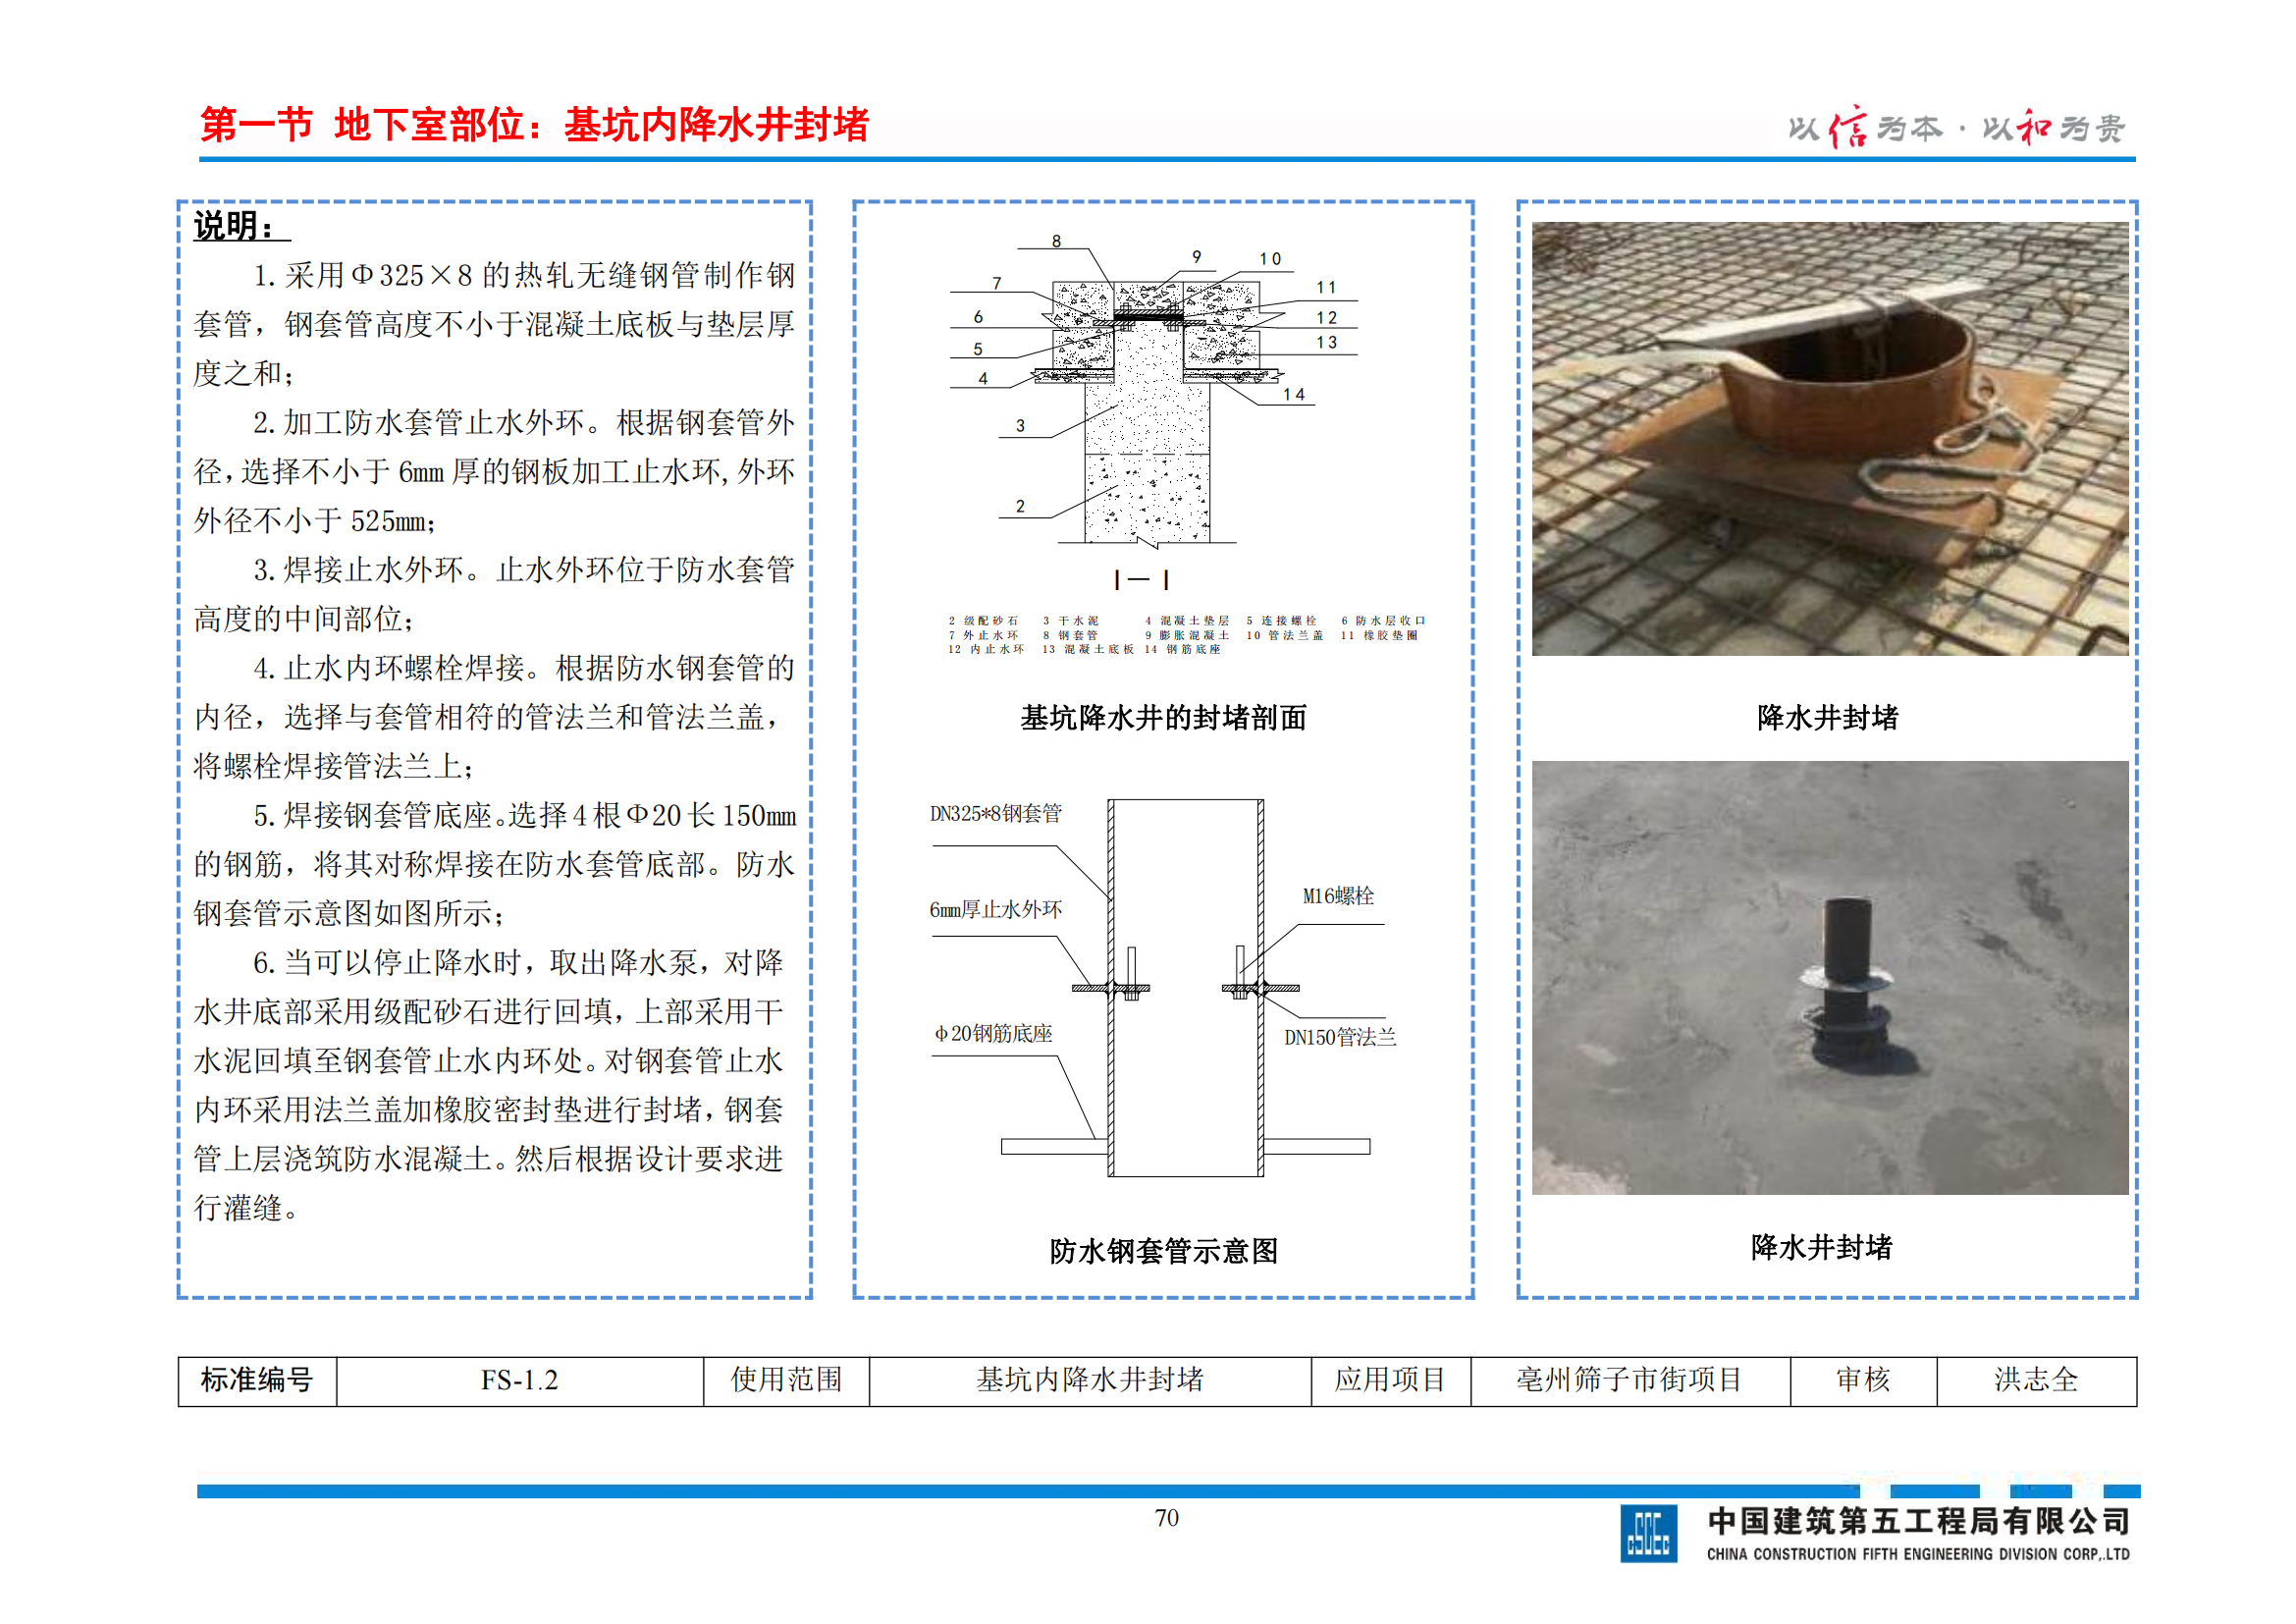 国企施工技术质量工艺标准图集插图(6)